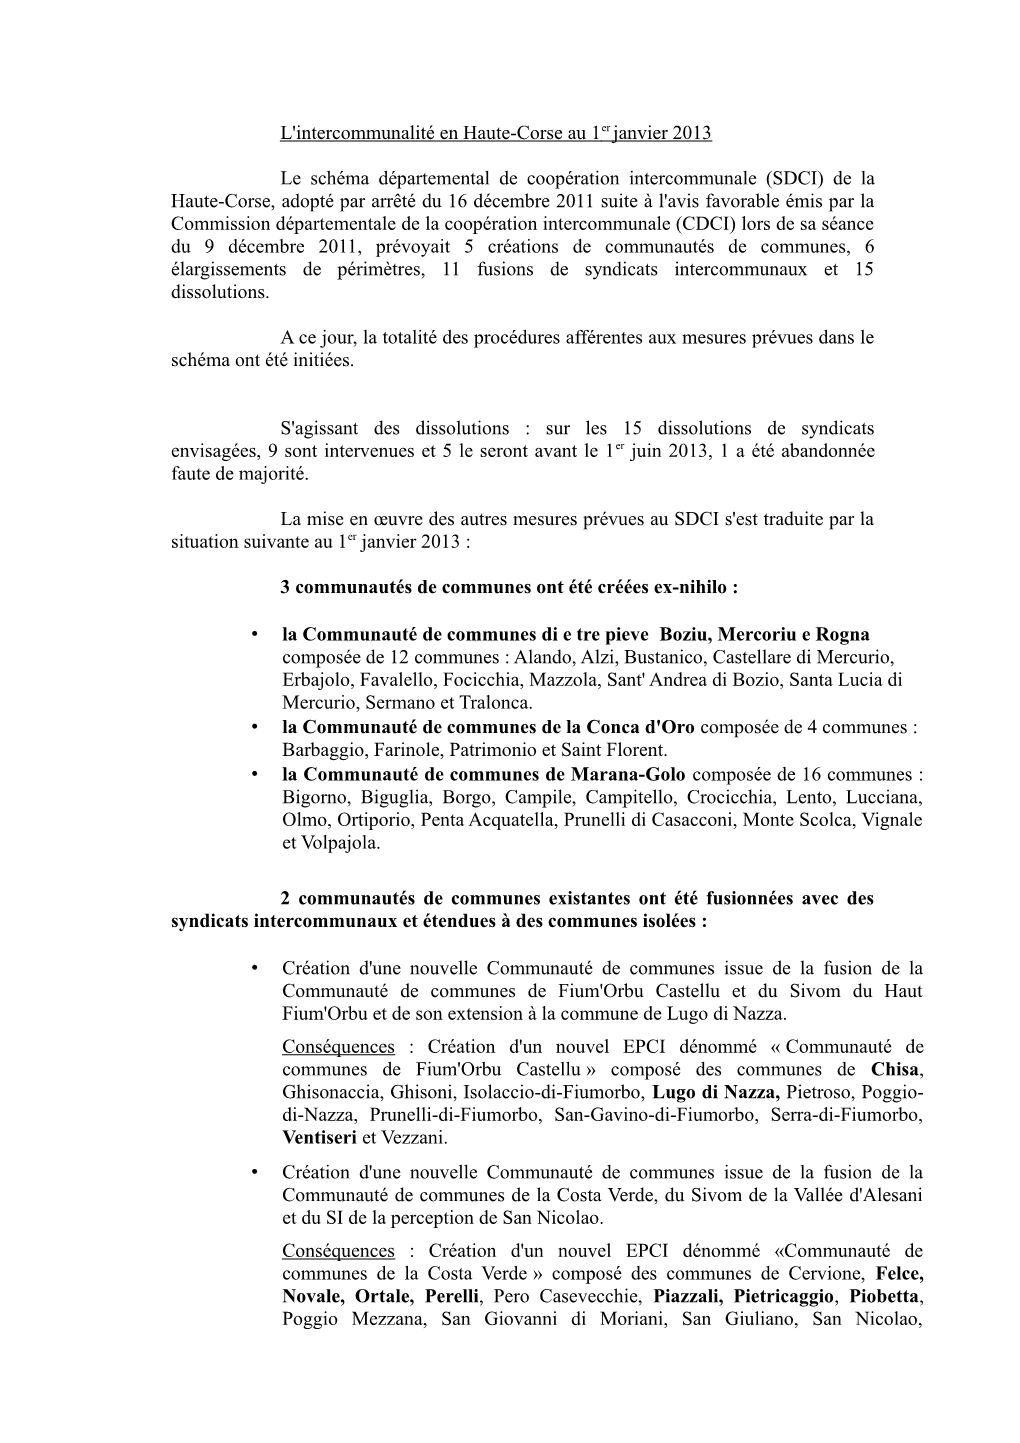 L'intercommunalité En Haute-Corse Au 1Er Janvier 2013 Le Schéma Départemental De Coopération Intercommunale (SDCI) De La